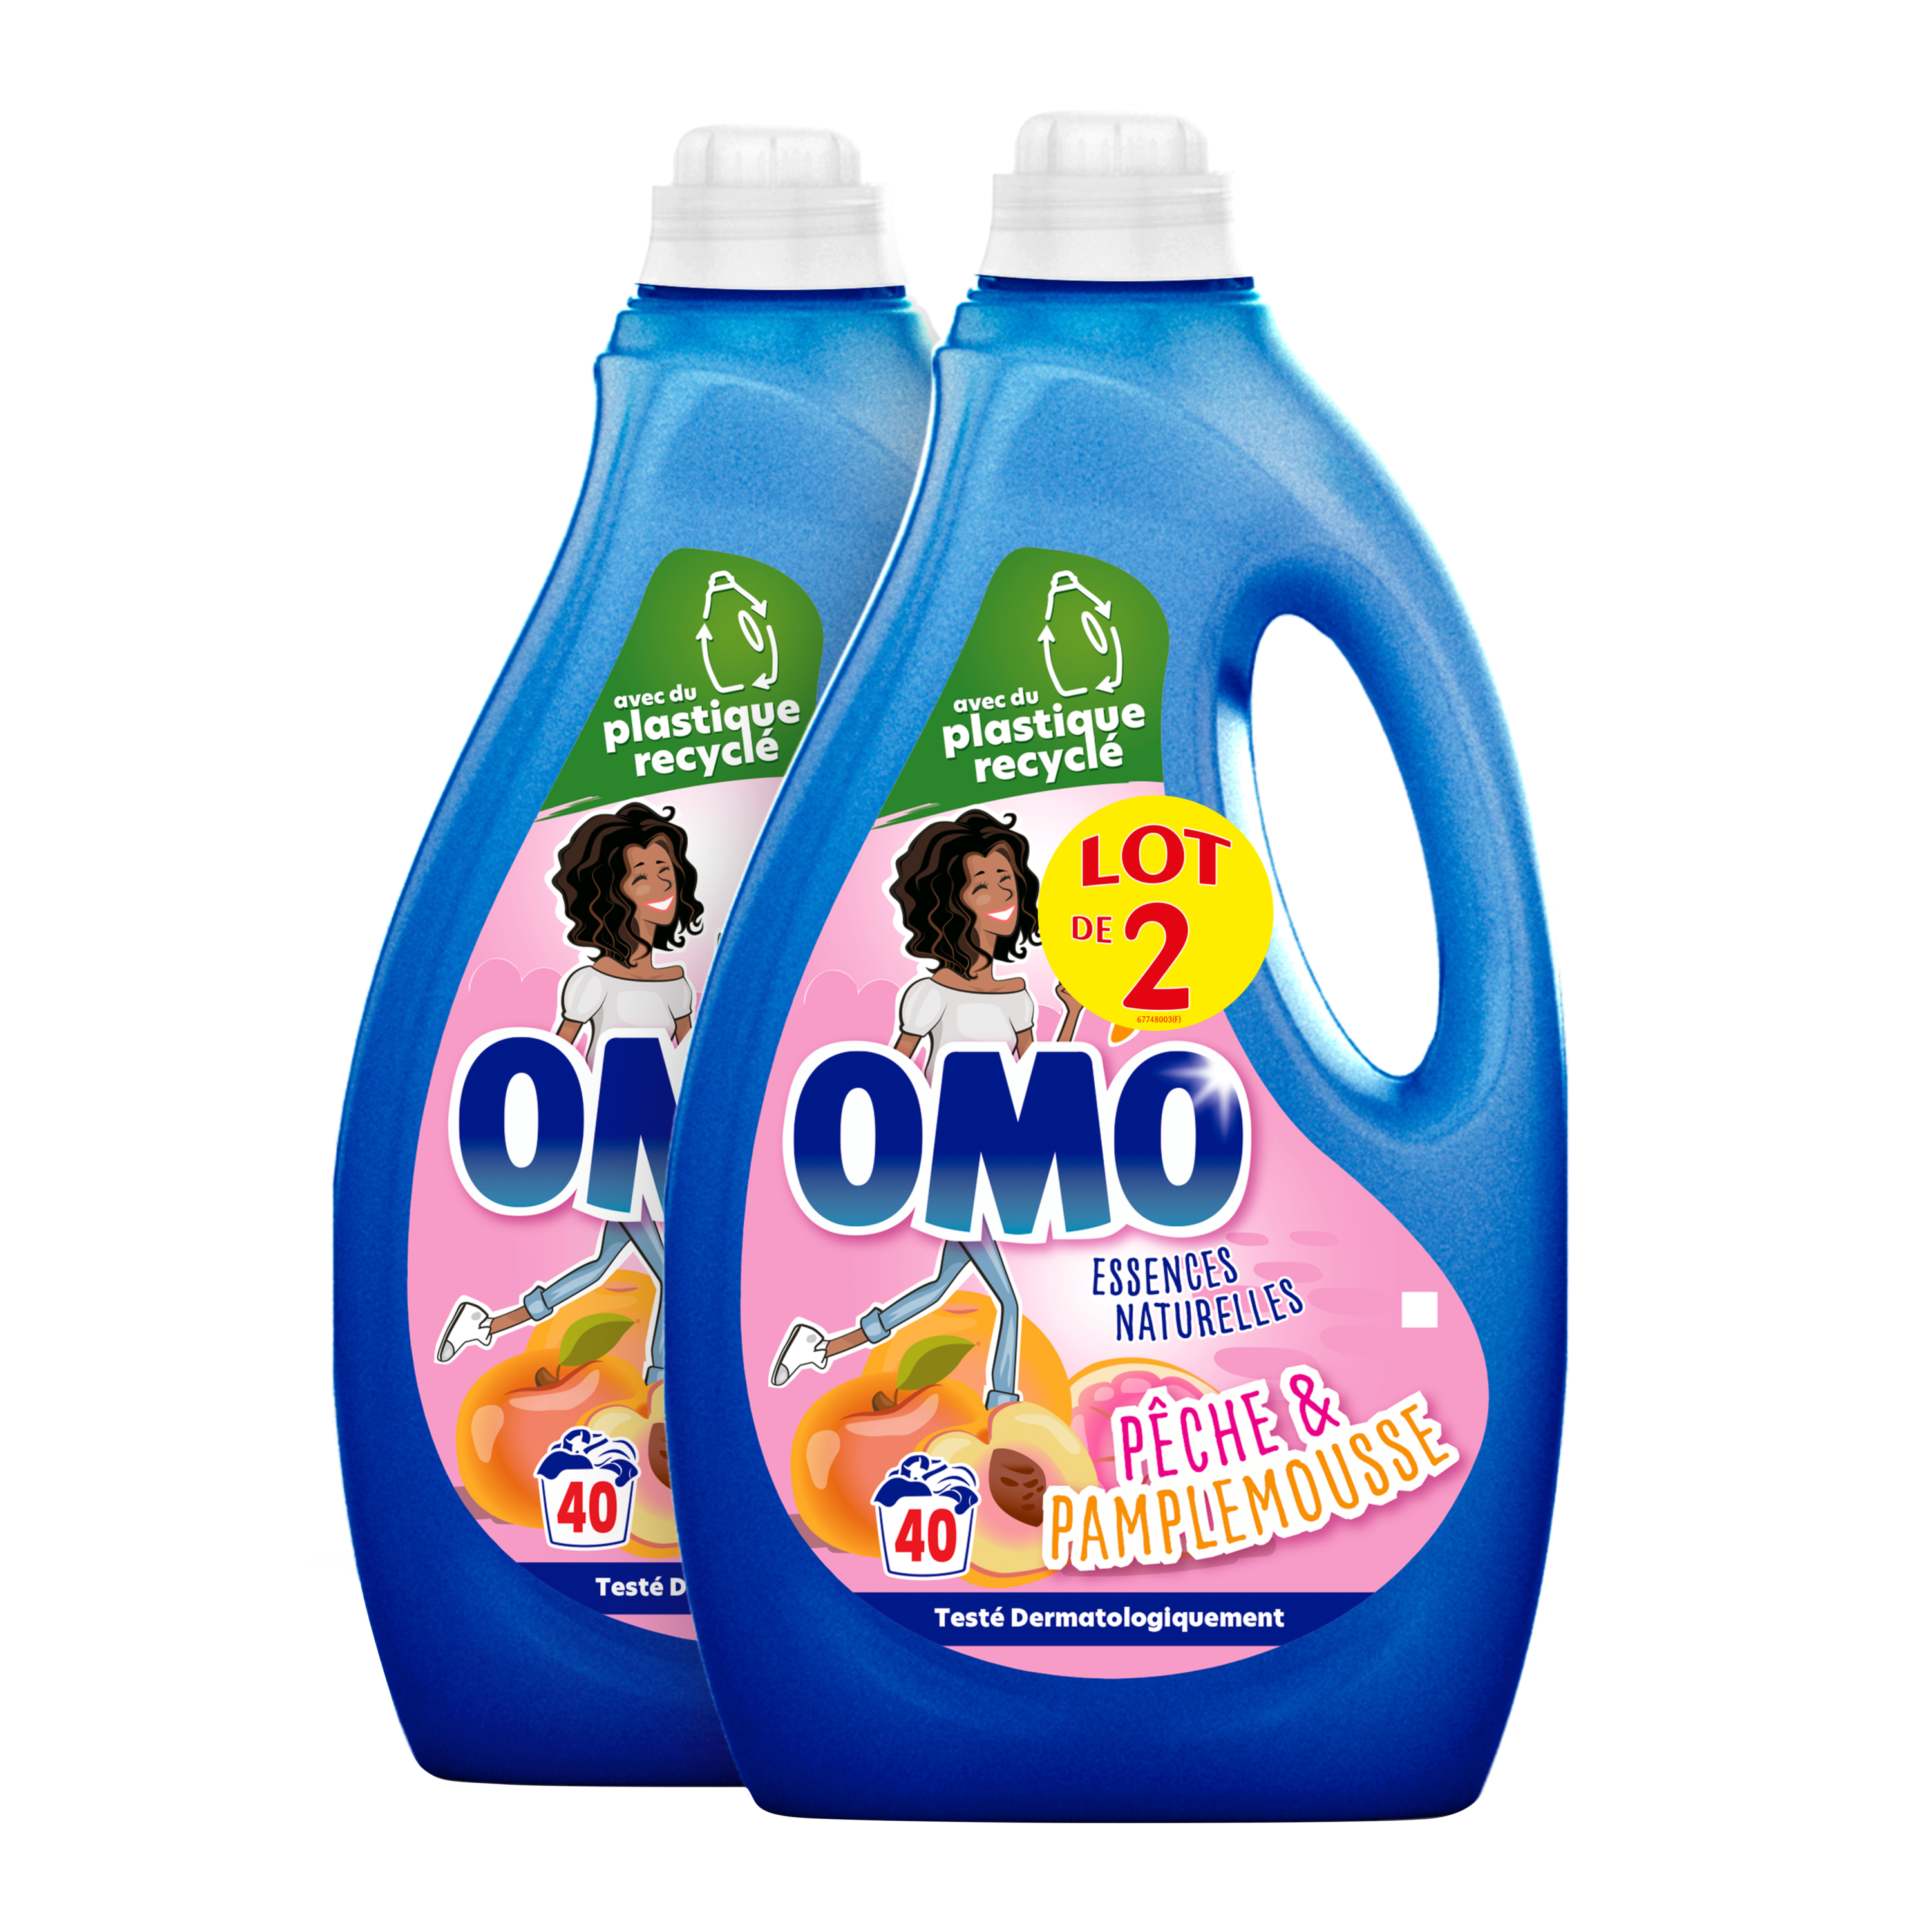 Omo Lessive liquide omo - En promotion chez E.Leclerc